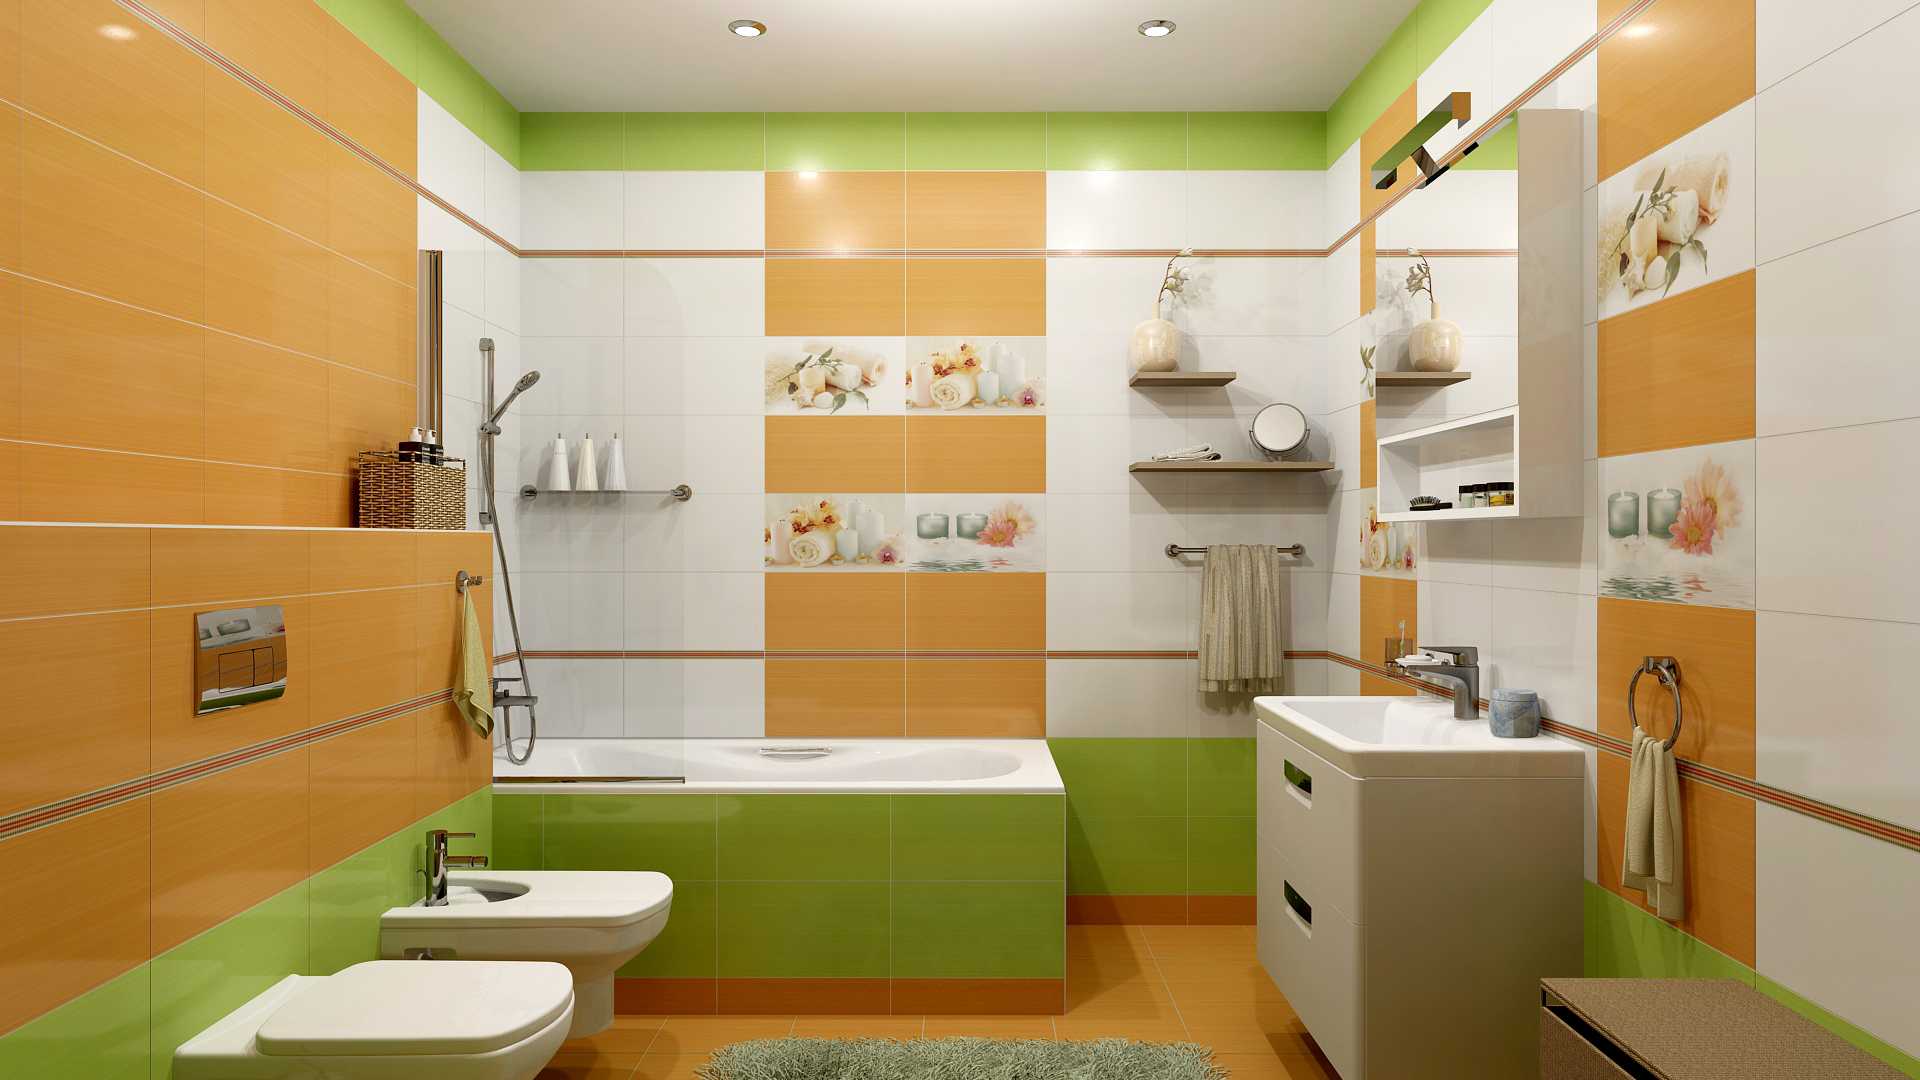 Выбираем цвет и размеры плитки для маленькой ванной - всё для дома
                                             - 23 ноября
                                             - 43038616407 - медиаплатформа миртесен